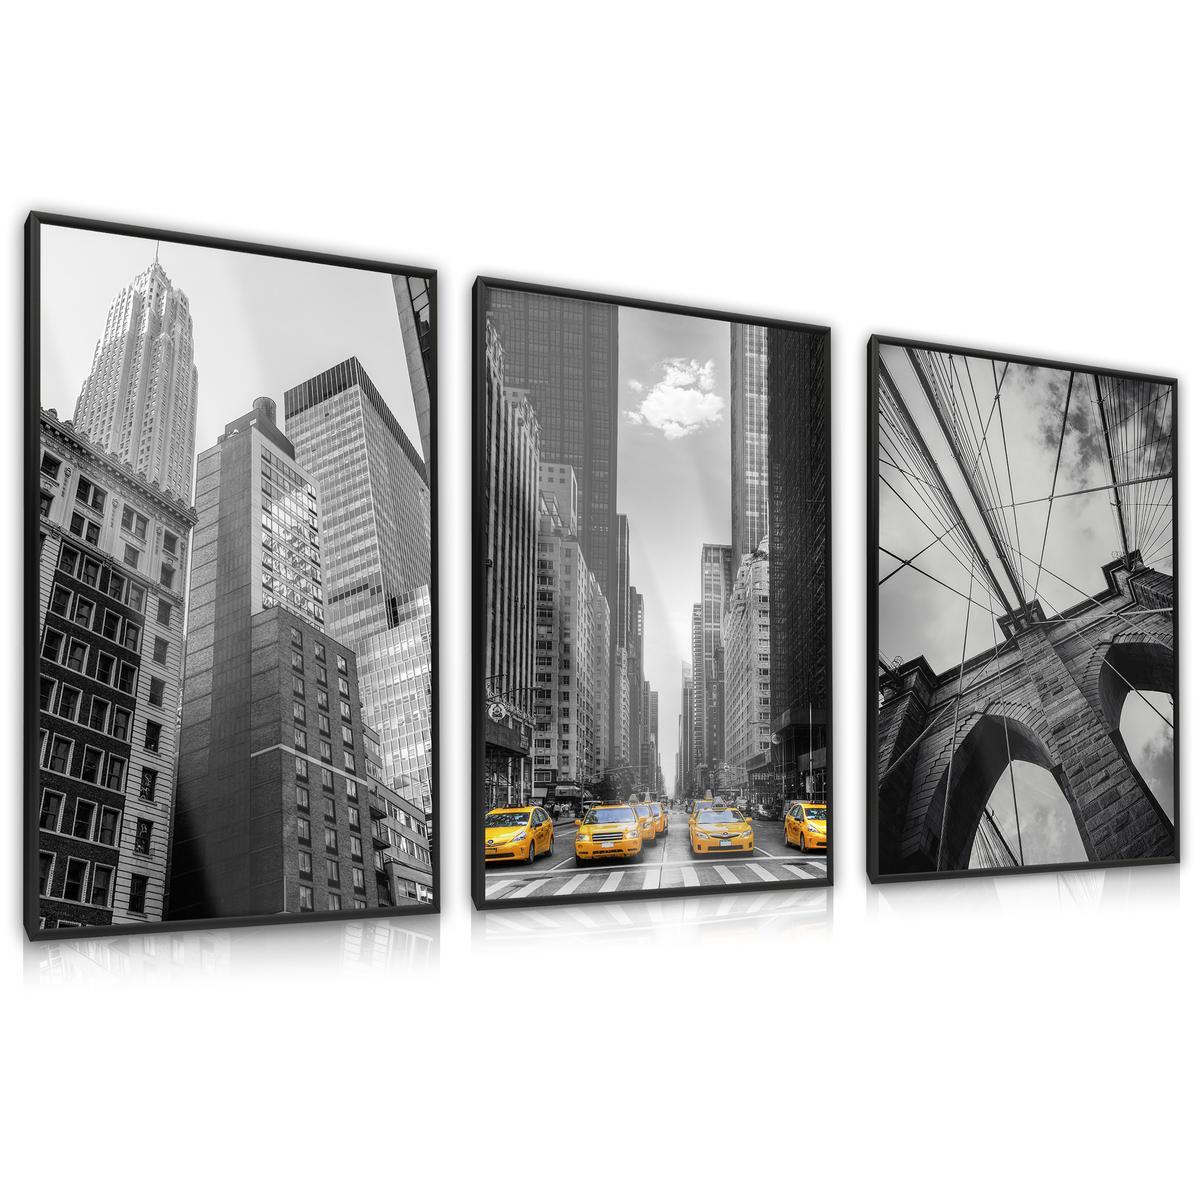 ZESTAW 3x Plakat W Ramie NEW YORK Wieżowce Architektura Efekt 3D 60x80cm nr. 1